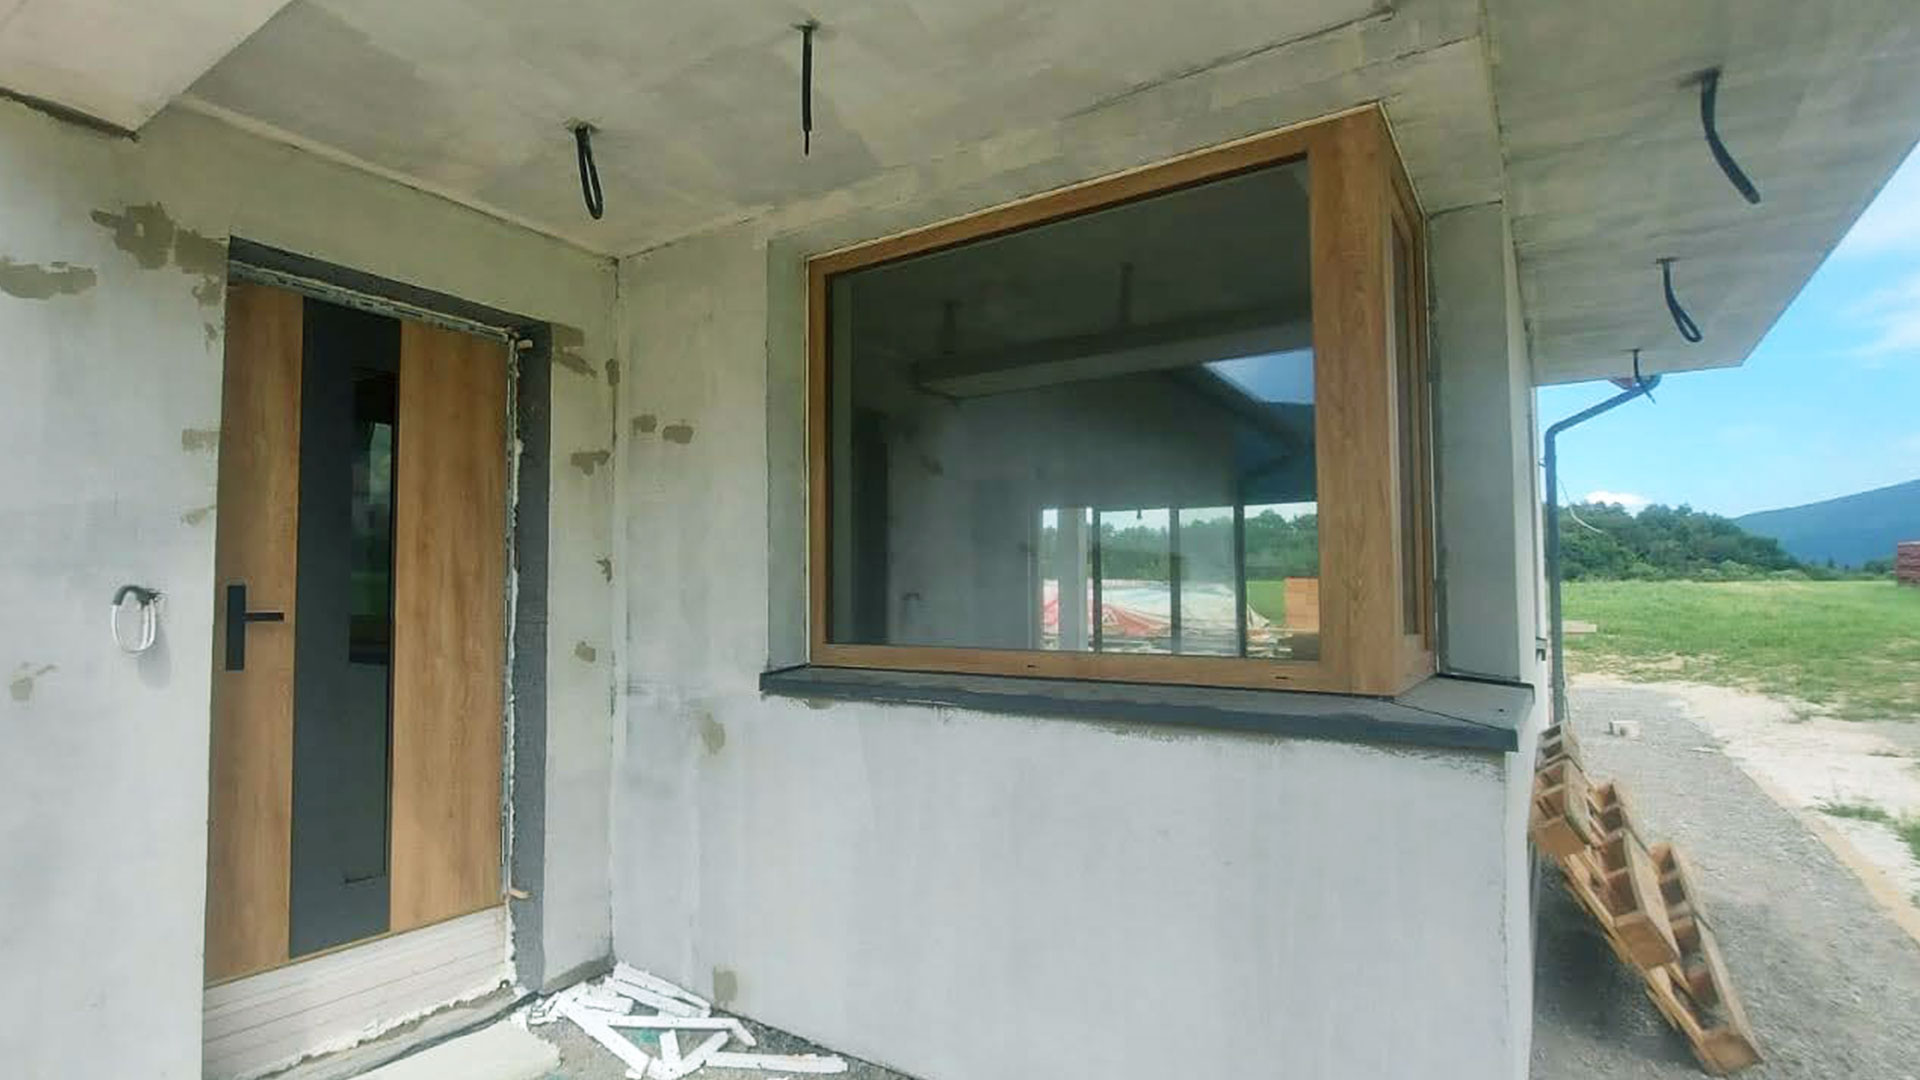 Zdjęcie przedstawiające dom jednorodzinny, w którym firma Monolit zamontowała drzwi wejściowe oraz okno.